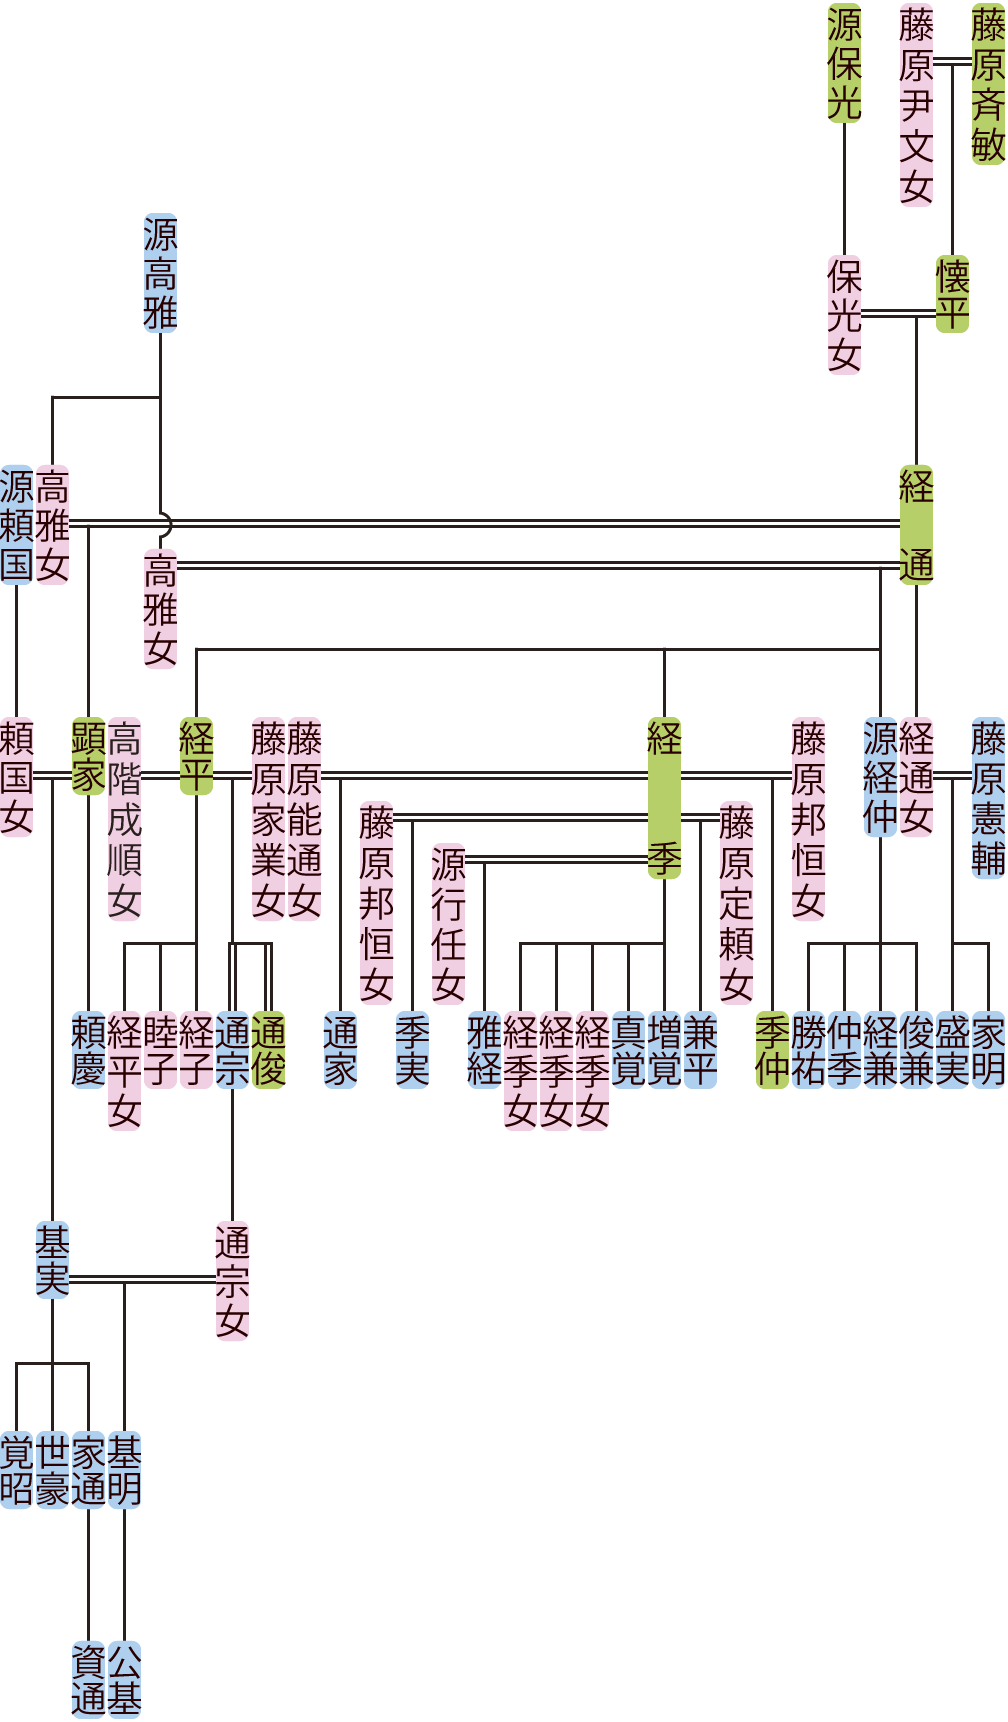 藤原経通の系図